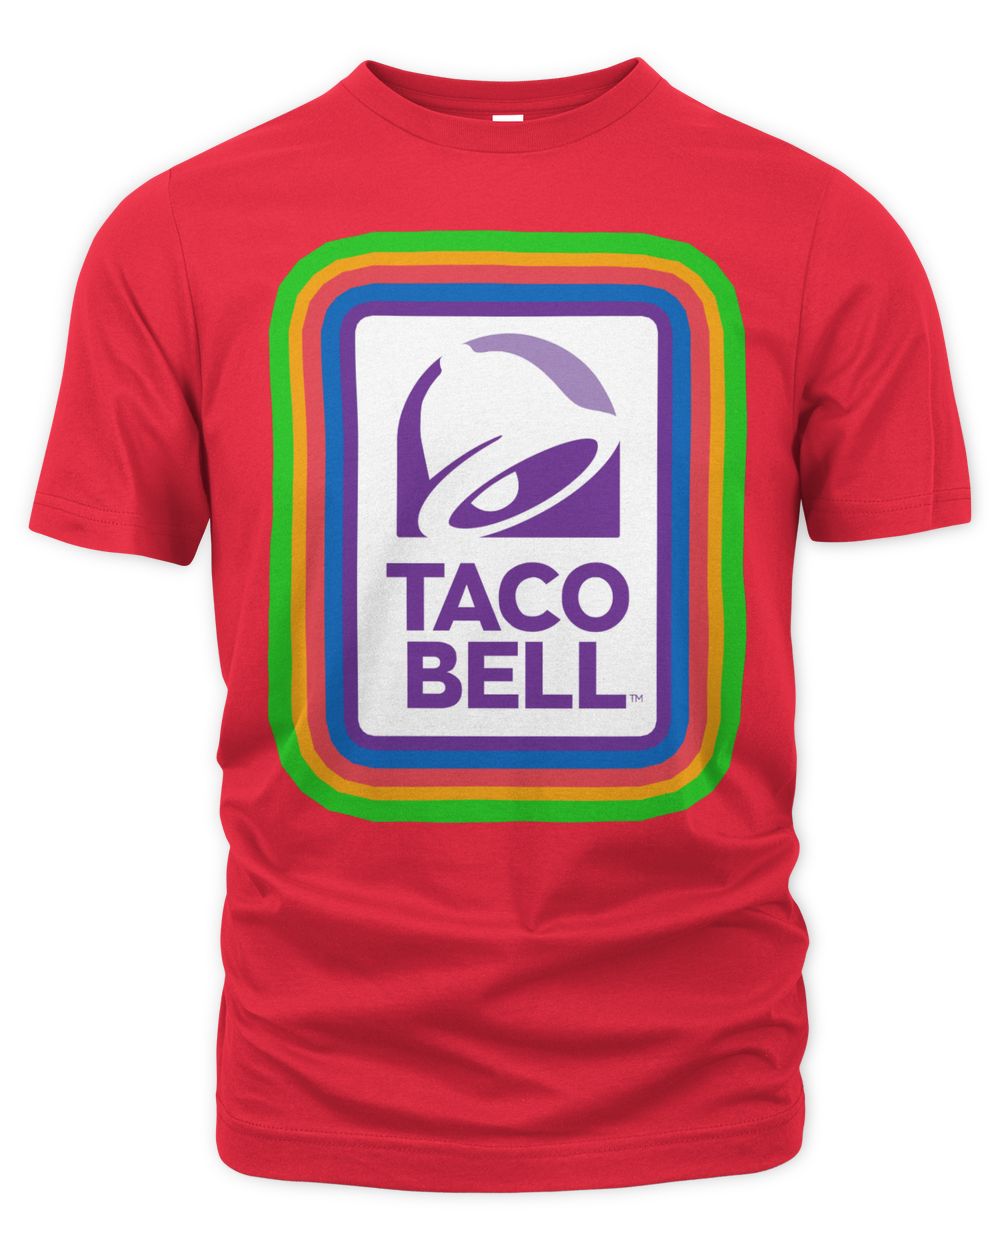 Taco Bell Merch Sign Shirt Unisex Premium T-Shirt red 